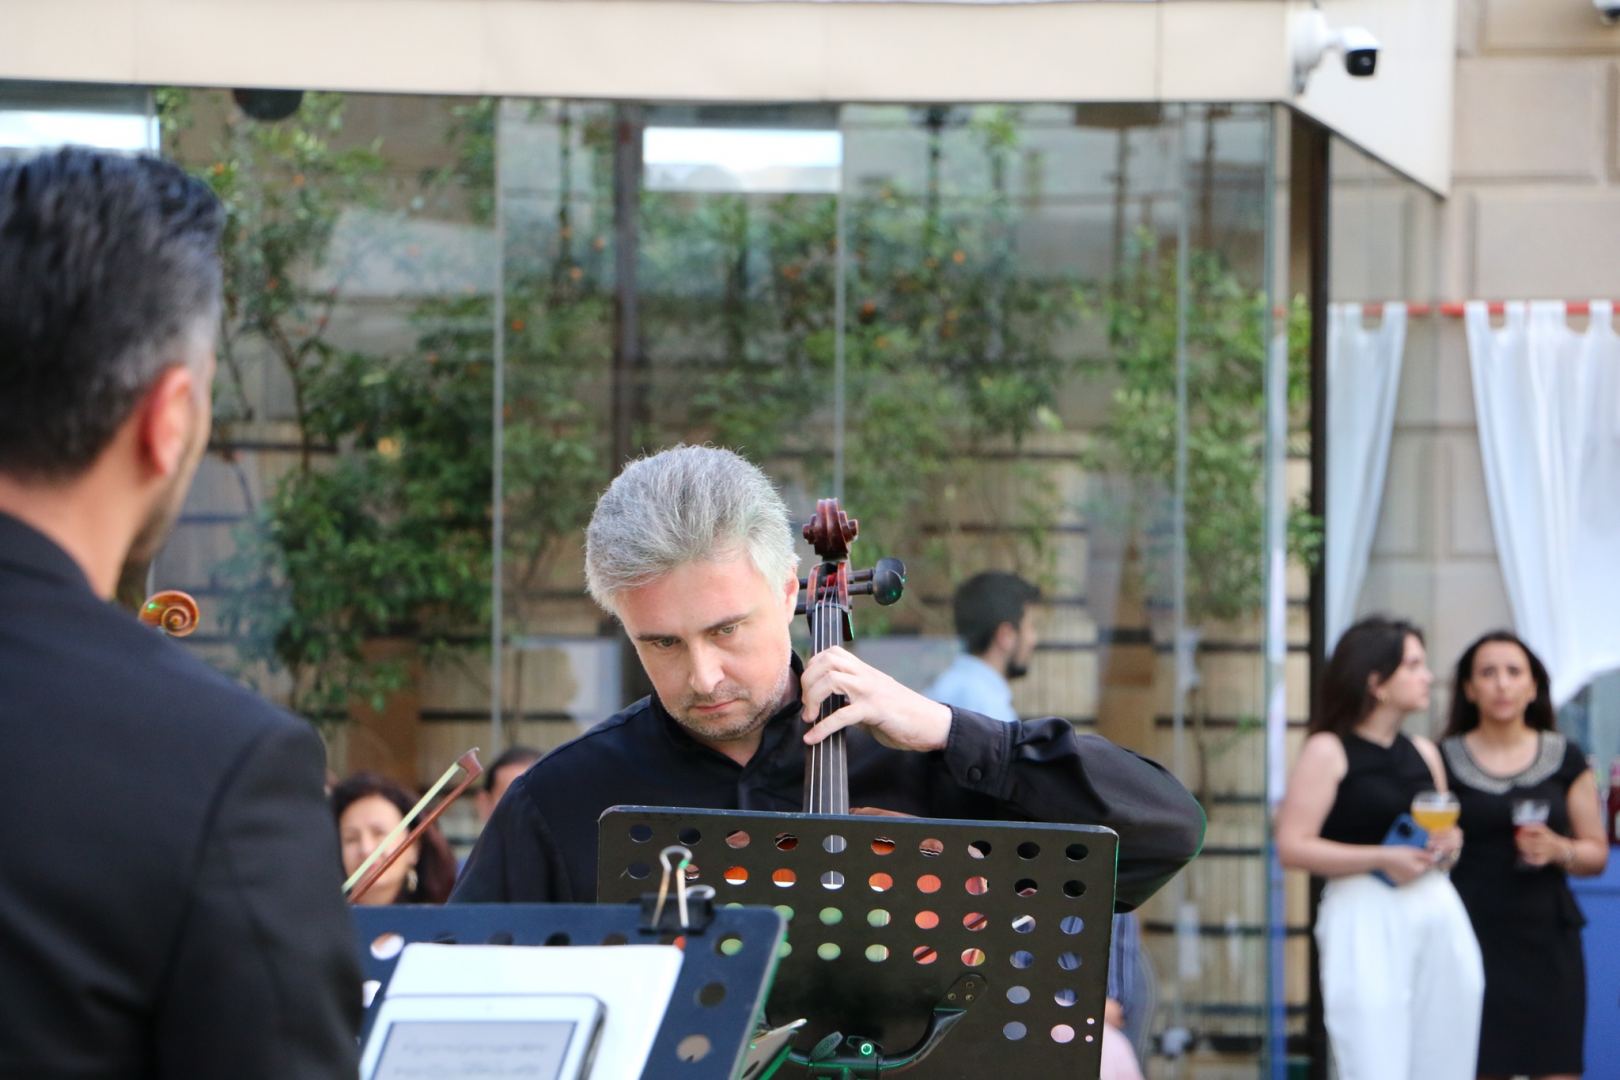 Bakı Piano Festivalında iki virtuoz - Yuri Sayutkin və Karol Beffa çıxış edib (FOTO/VİDEO)